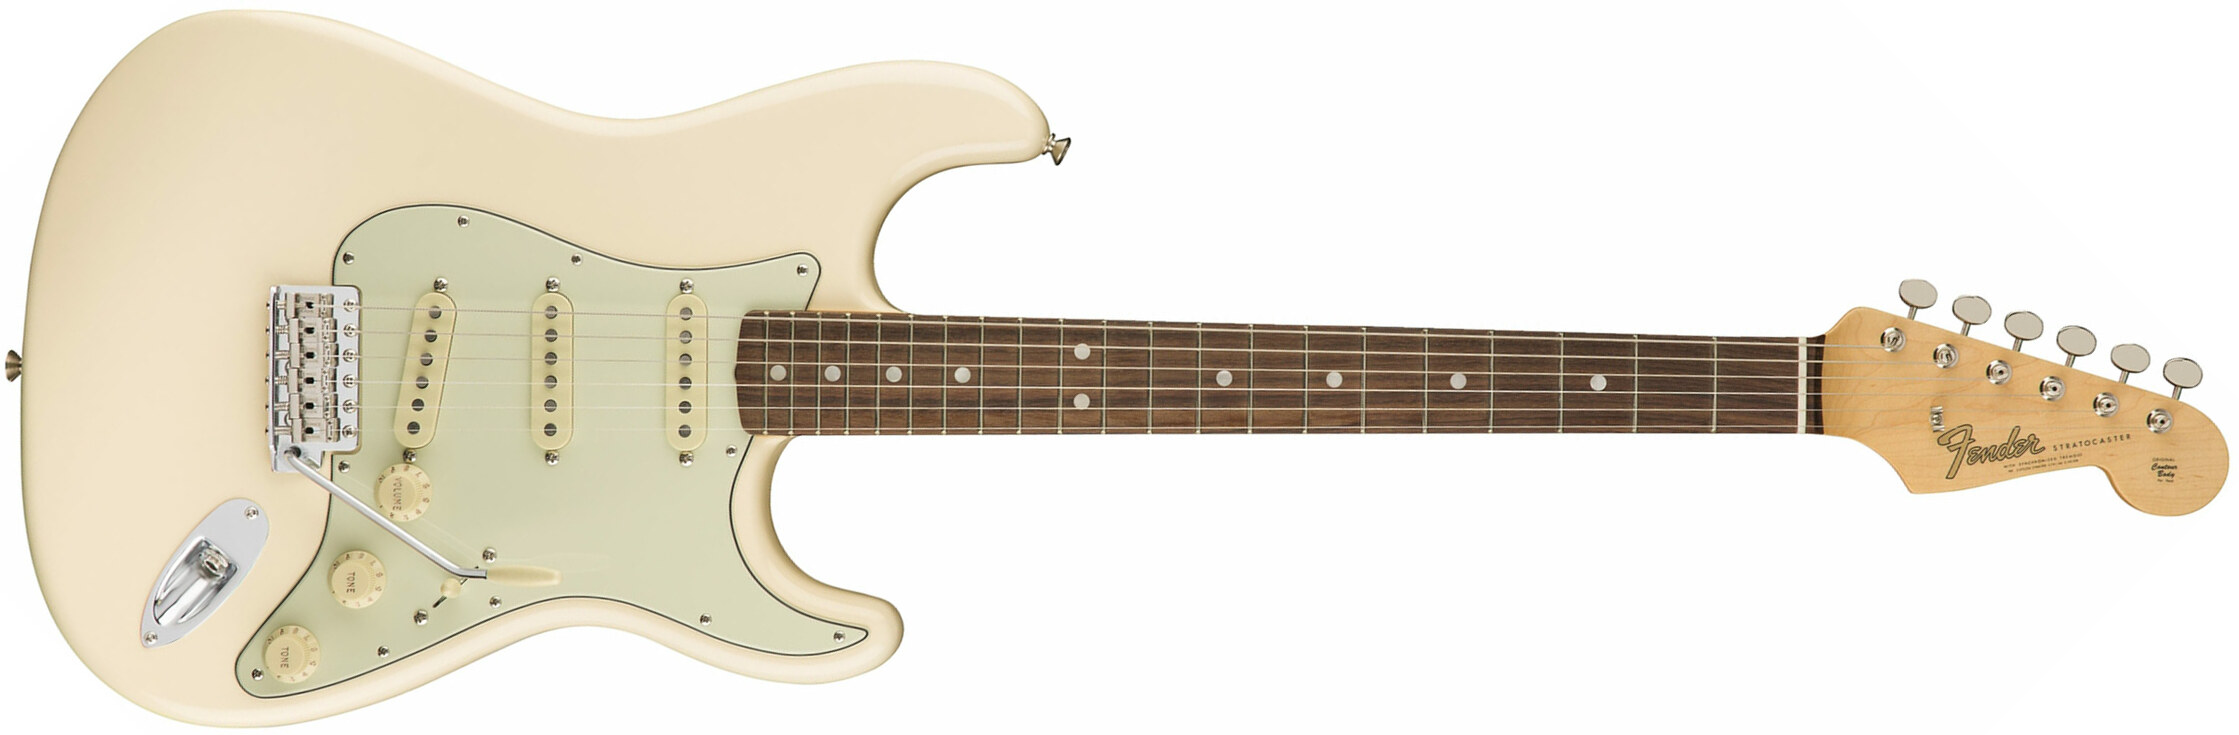 Fender Strat '60s American Original Usa Sss Rw - Olympic White - Elektrische gitaar in Str-vorm - Main picture